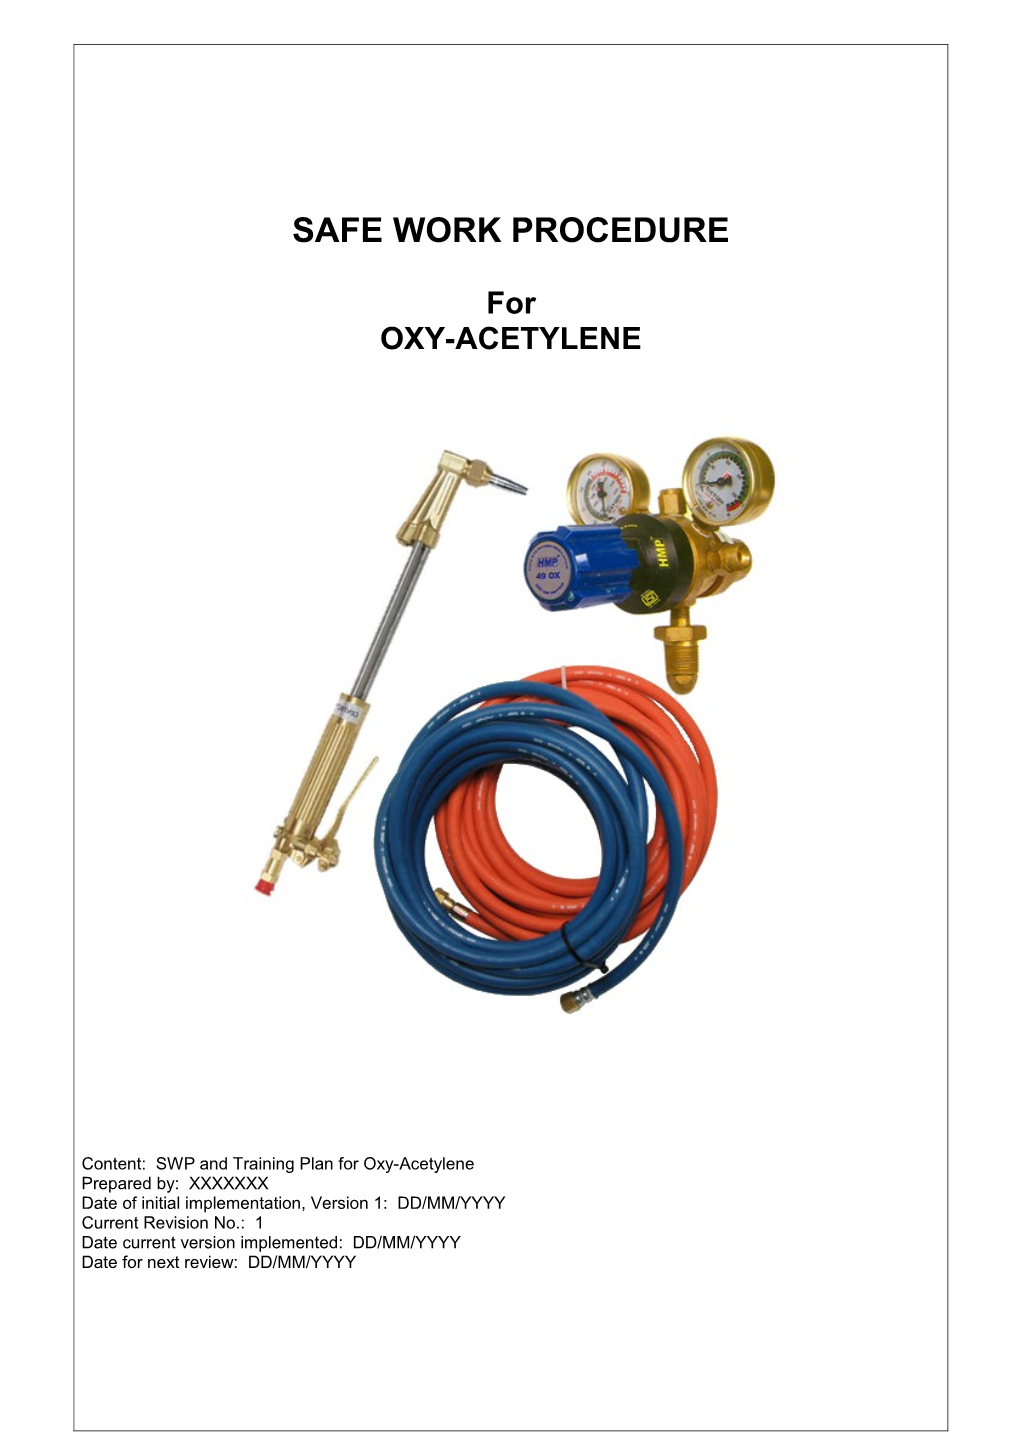 XXXXXXX Pty Ltd Safe Work Procedure Oxy-Acetylene Revision: XX DD/MM/YYYY